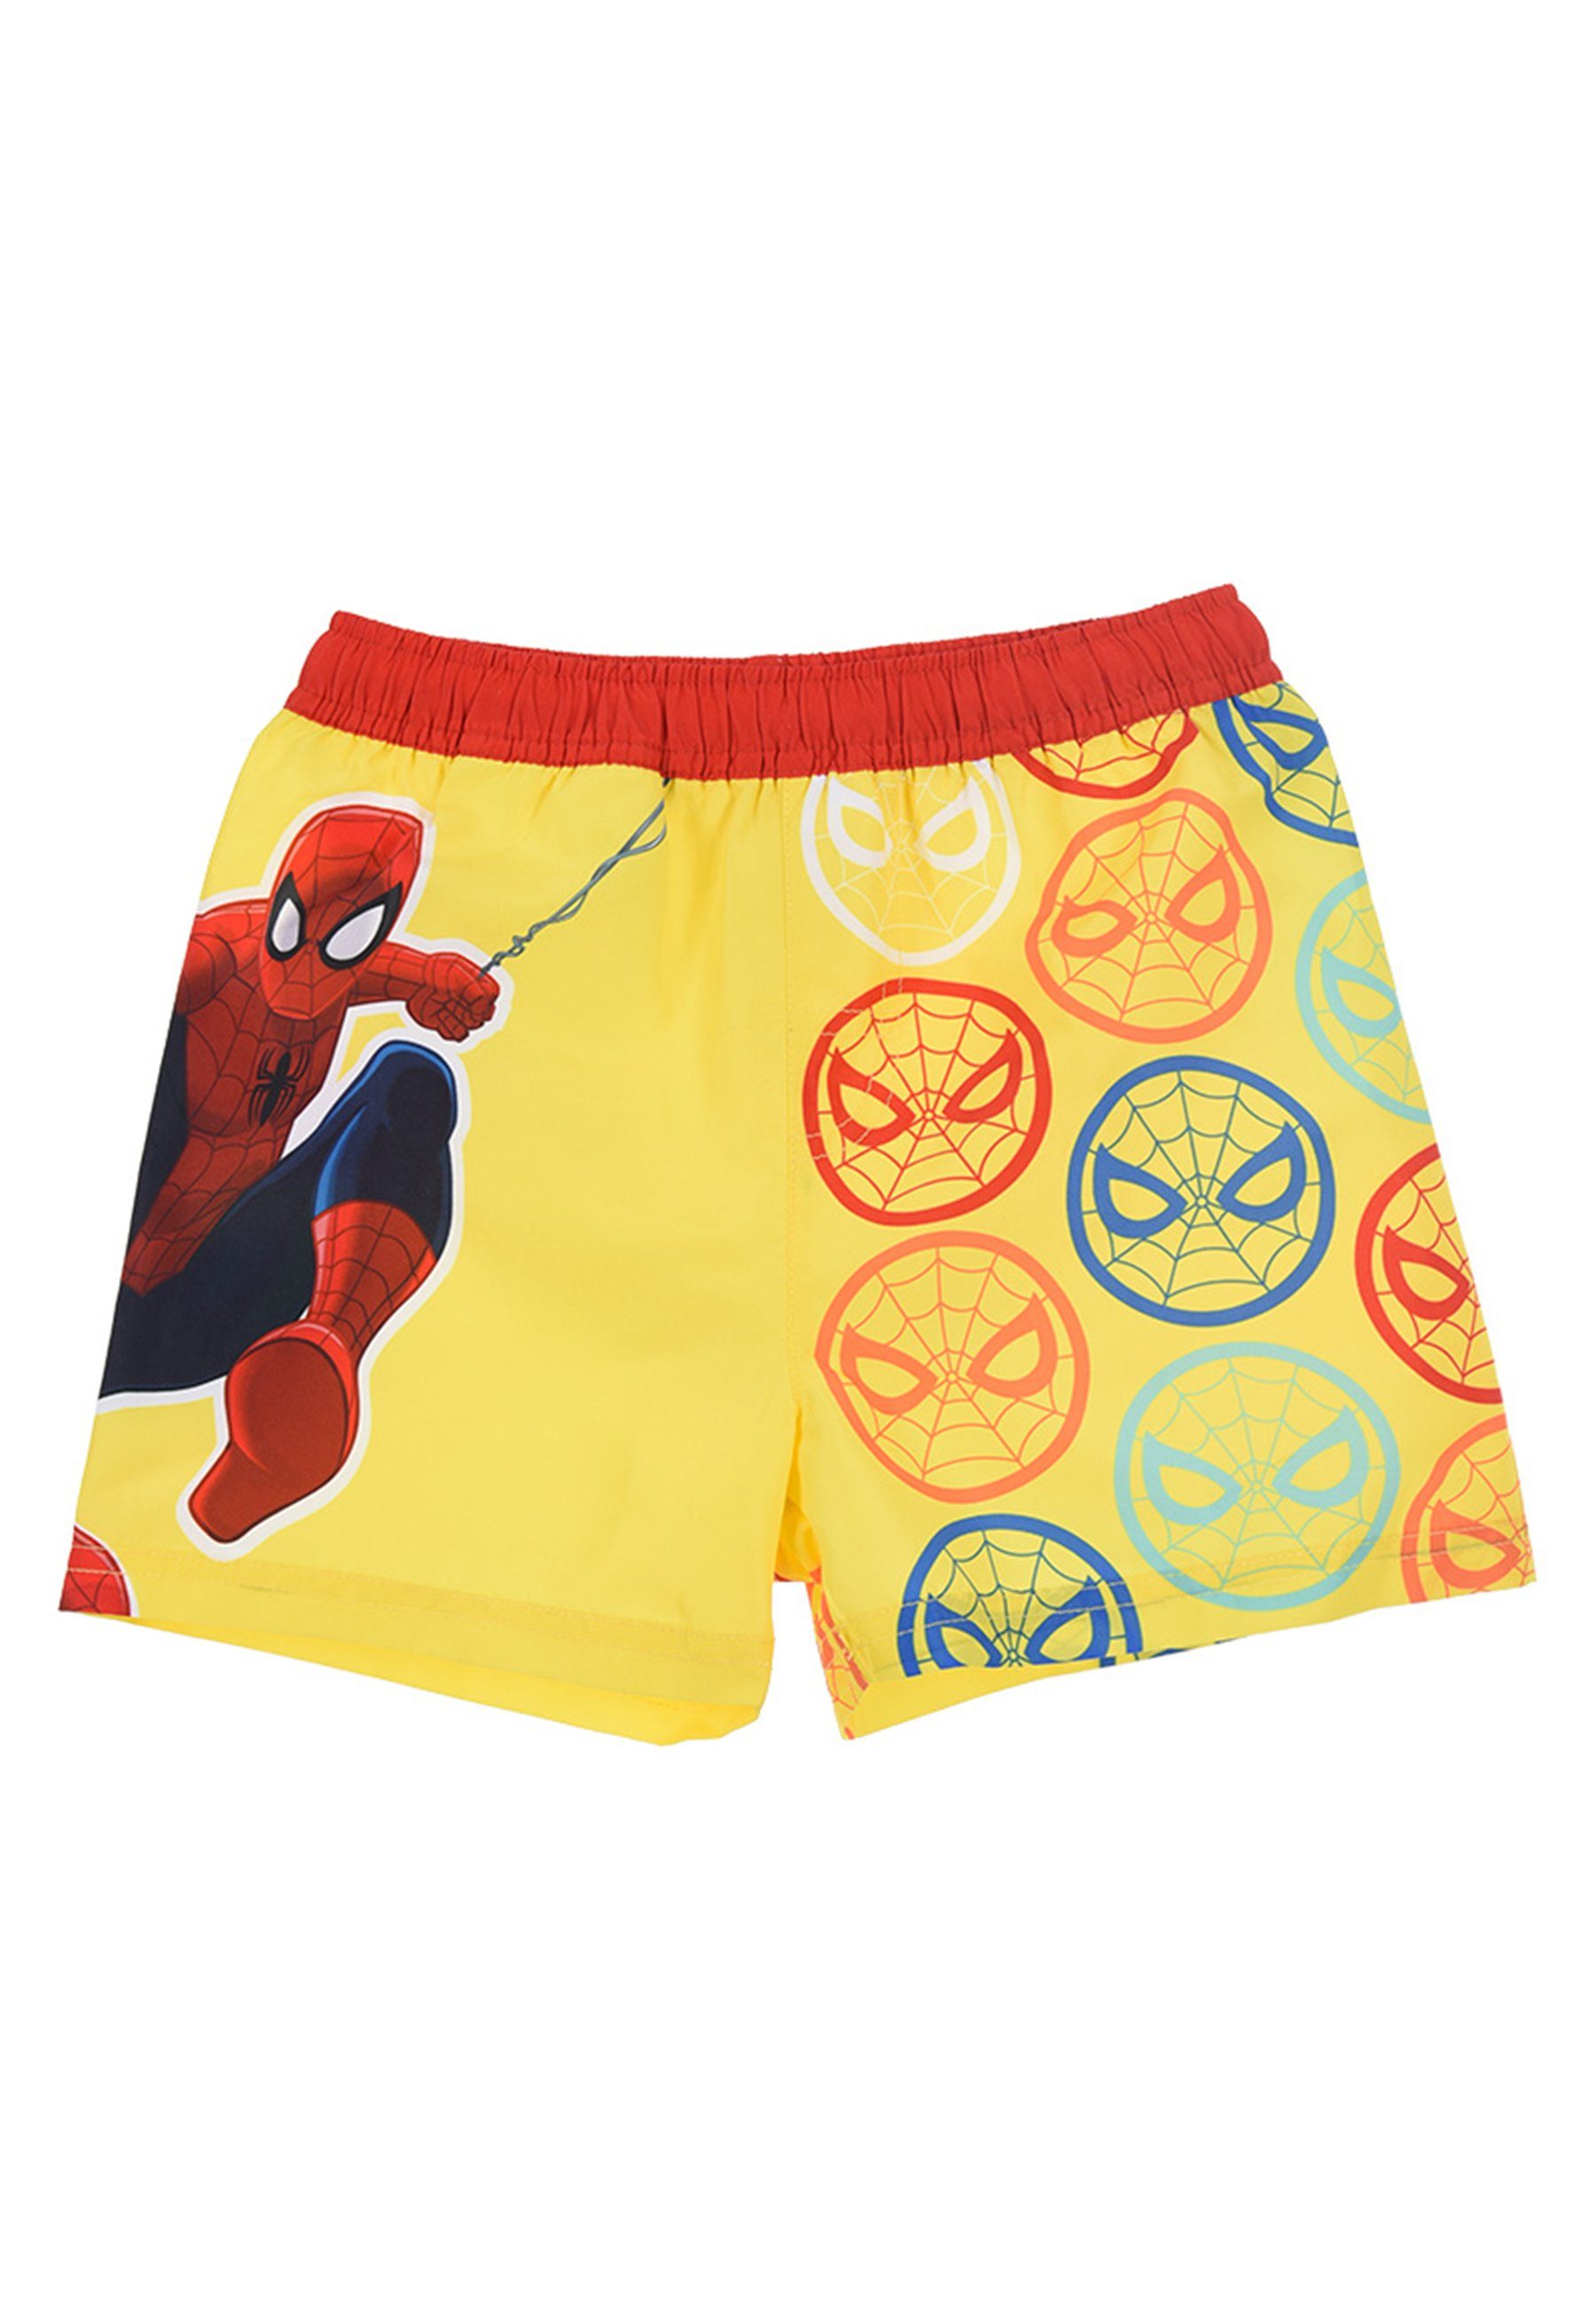 Kinder Marvel Badepants Jungen Badeshorts Badehose Bermuda-Shorts Gelb Spiderman